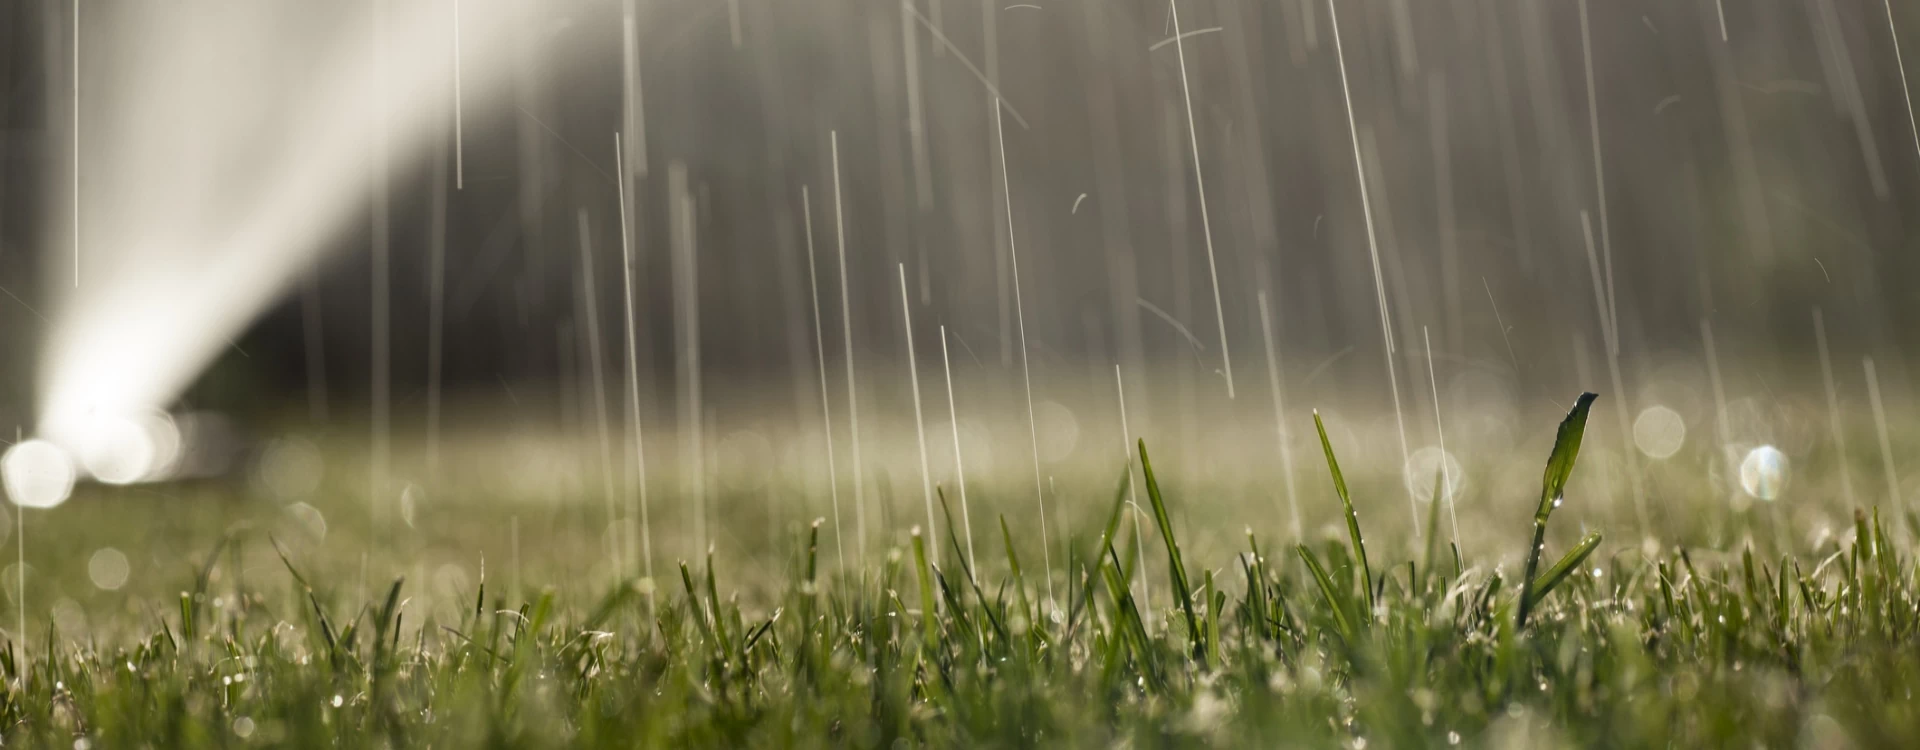 deszcz padający na trawnik